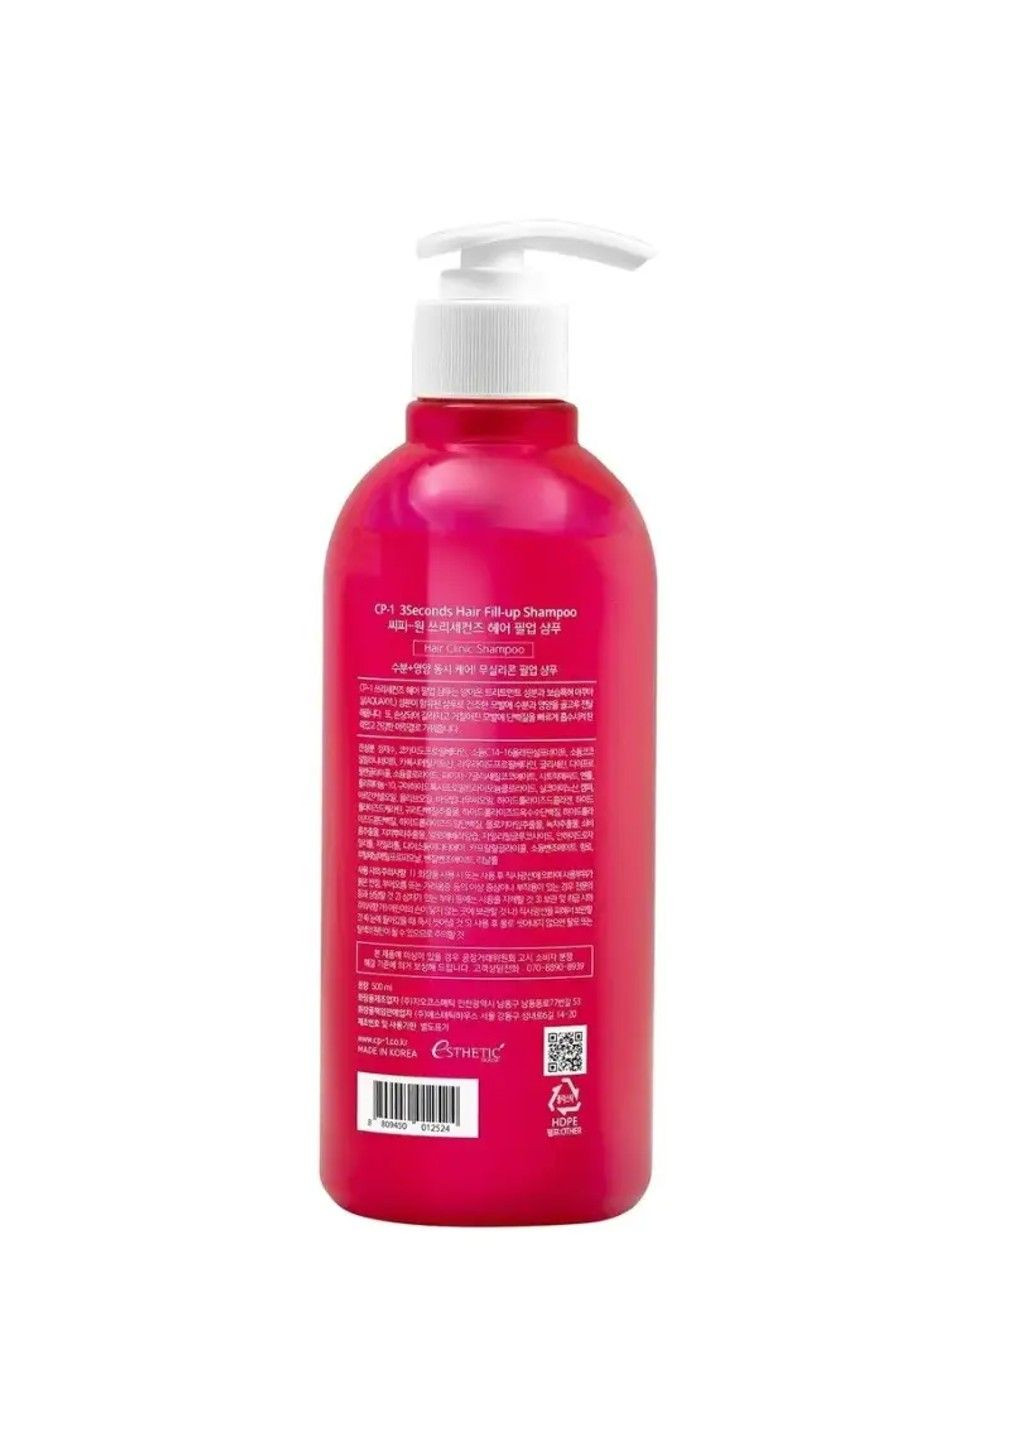 Відновлюючий шампунь для гладкості волосся Esthetic House 3 Seconds Hair Fill-Up Shampoo - 500 мл CP-1 (285813477)